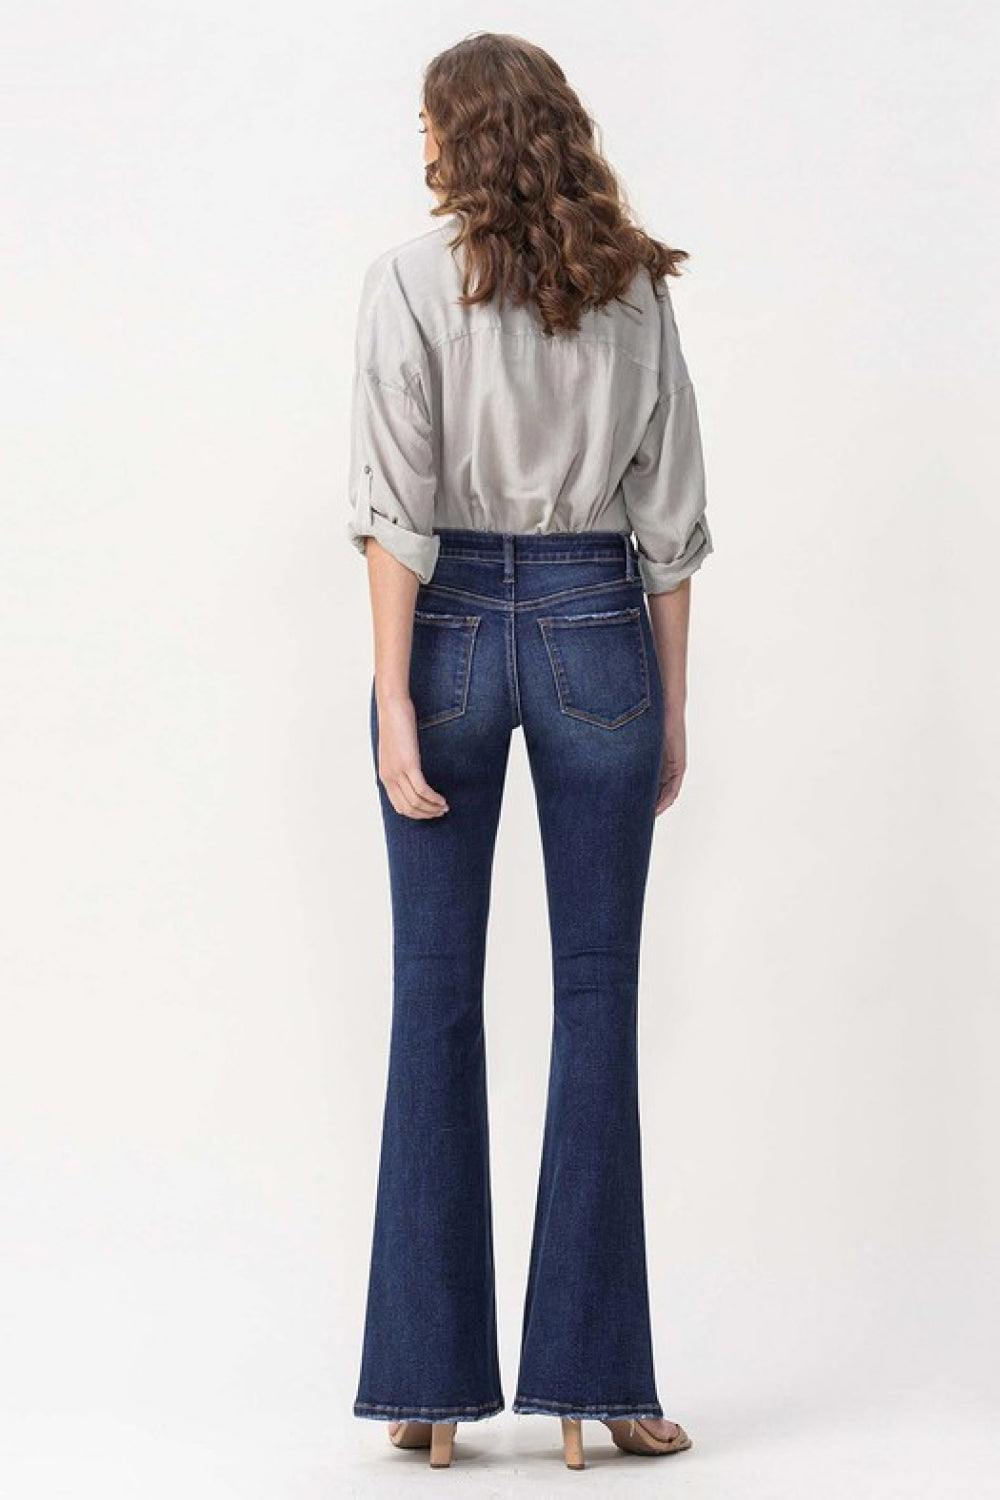 LOVERVET by Vervet Full Size Joanna Mid Rise Flare Jeans